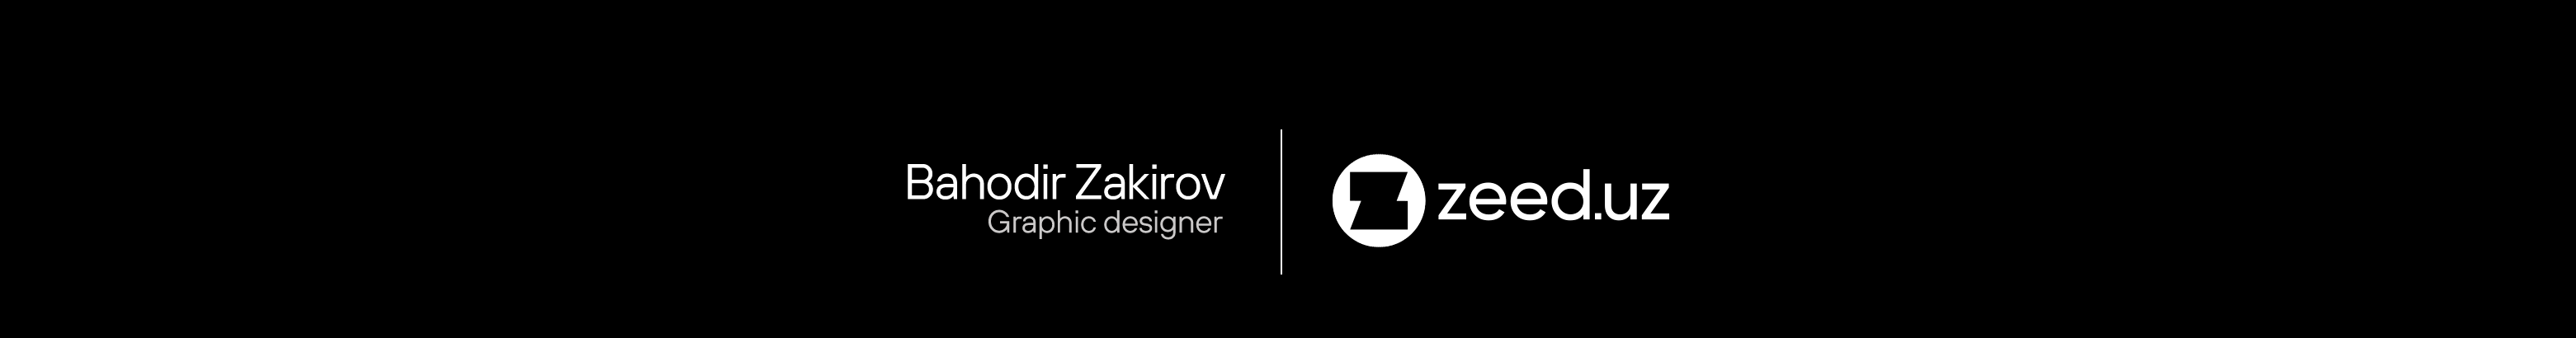 Bahodir Zakirov's profile banner